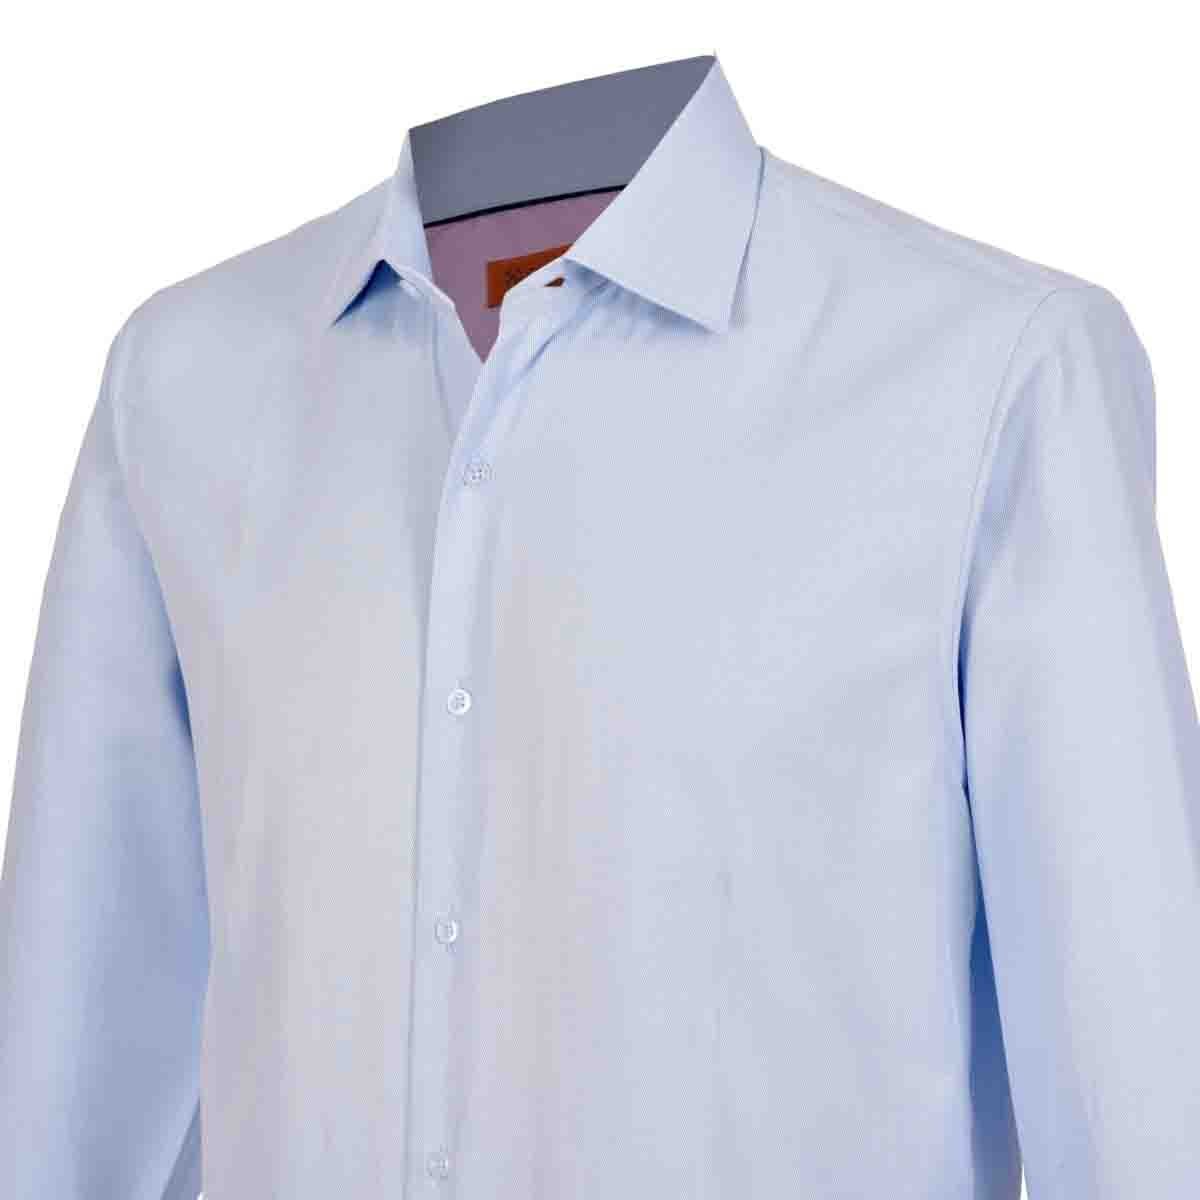 Download Camisa de vestir slim fit color azul claro carlo corinto ...